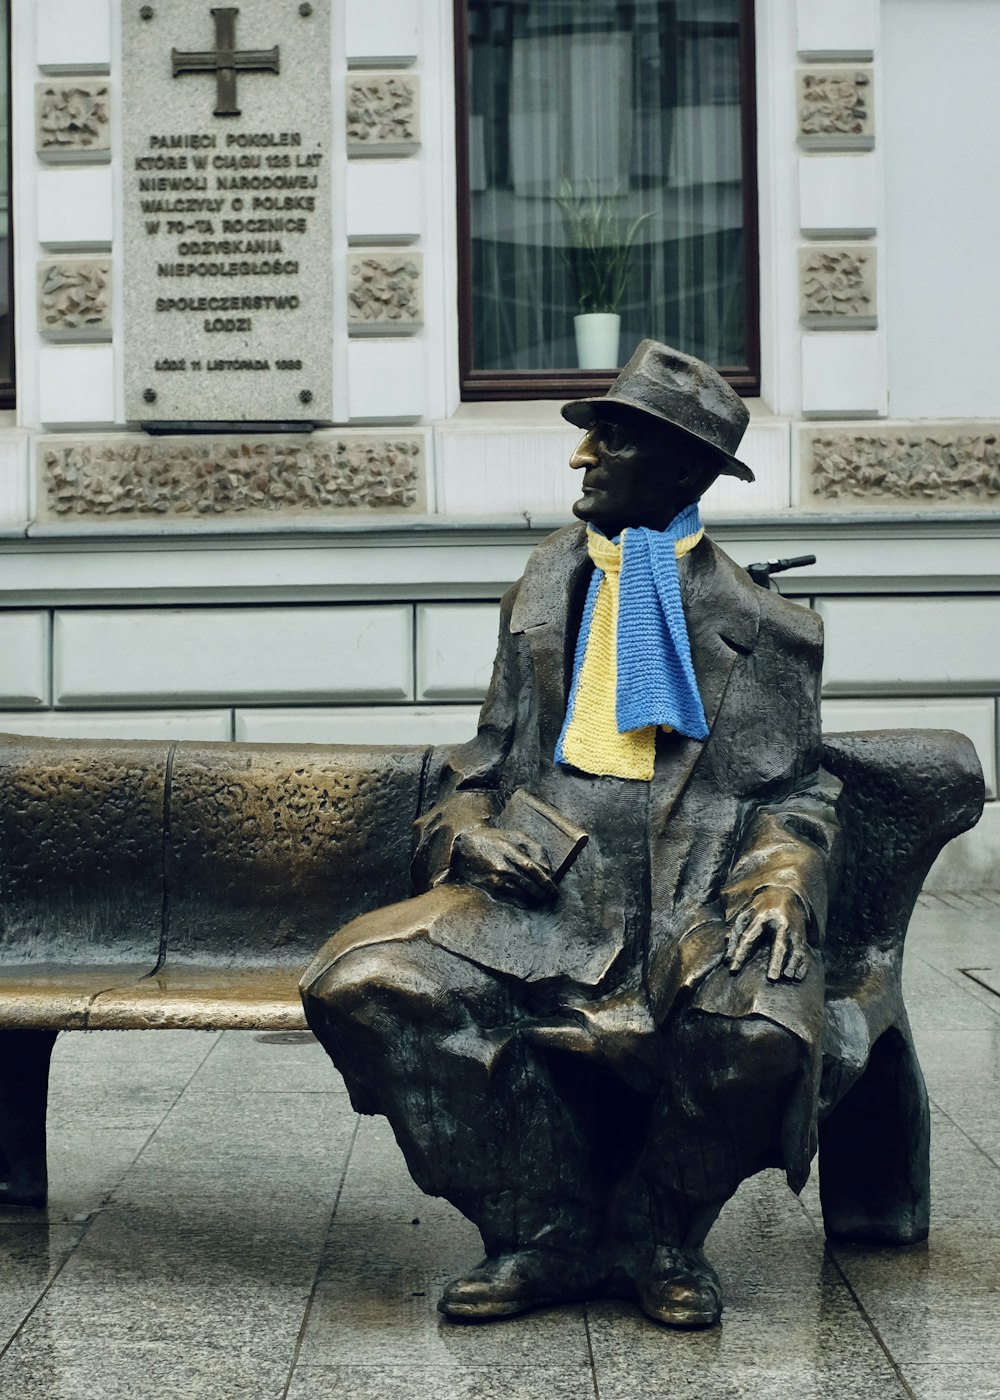 eine Statue einer Person, die auf einer Bank sitzt